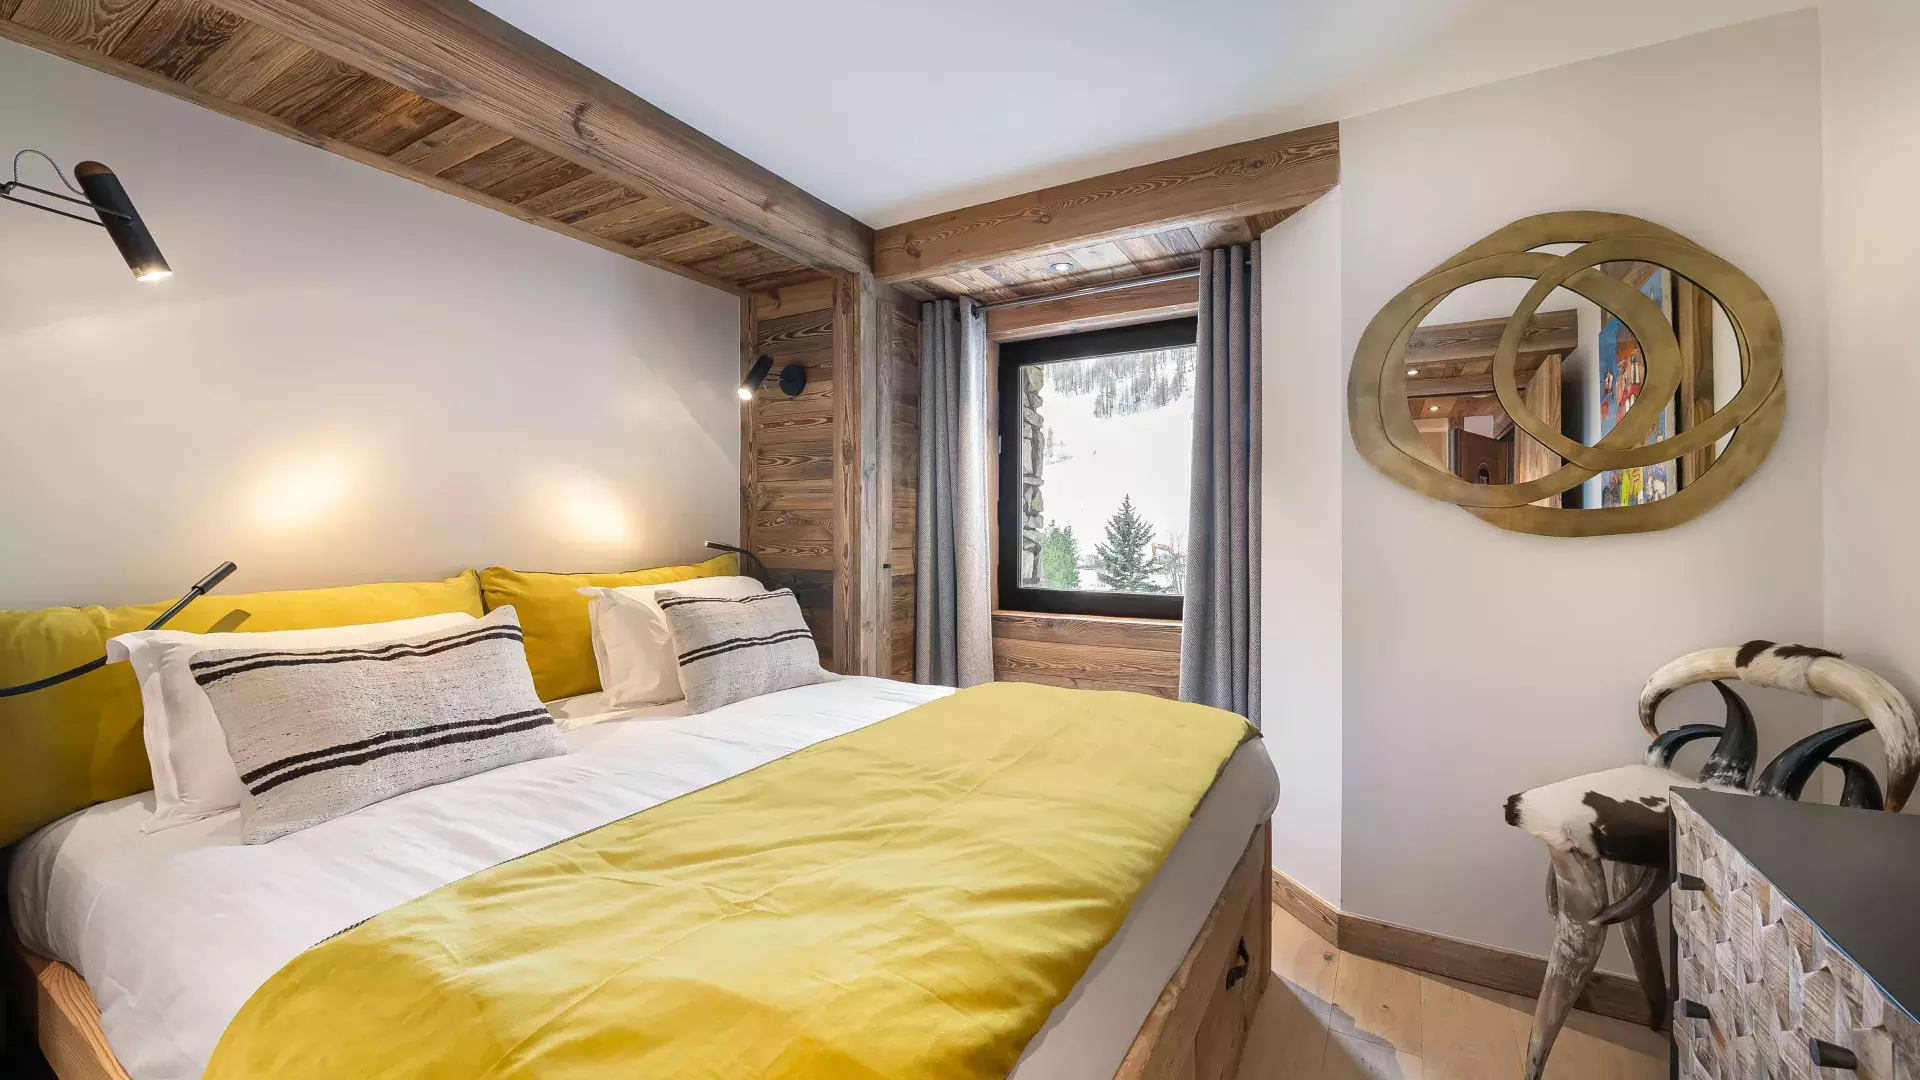 Appartement Flocon 7 - Location chalets Covarel - Val d'Isère Alpes - France - Chambre double